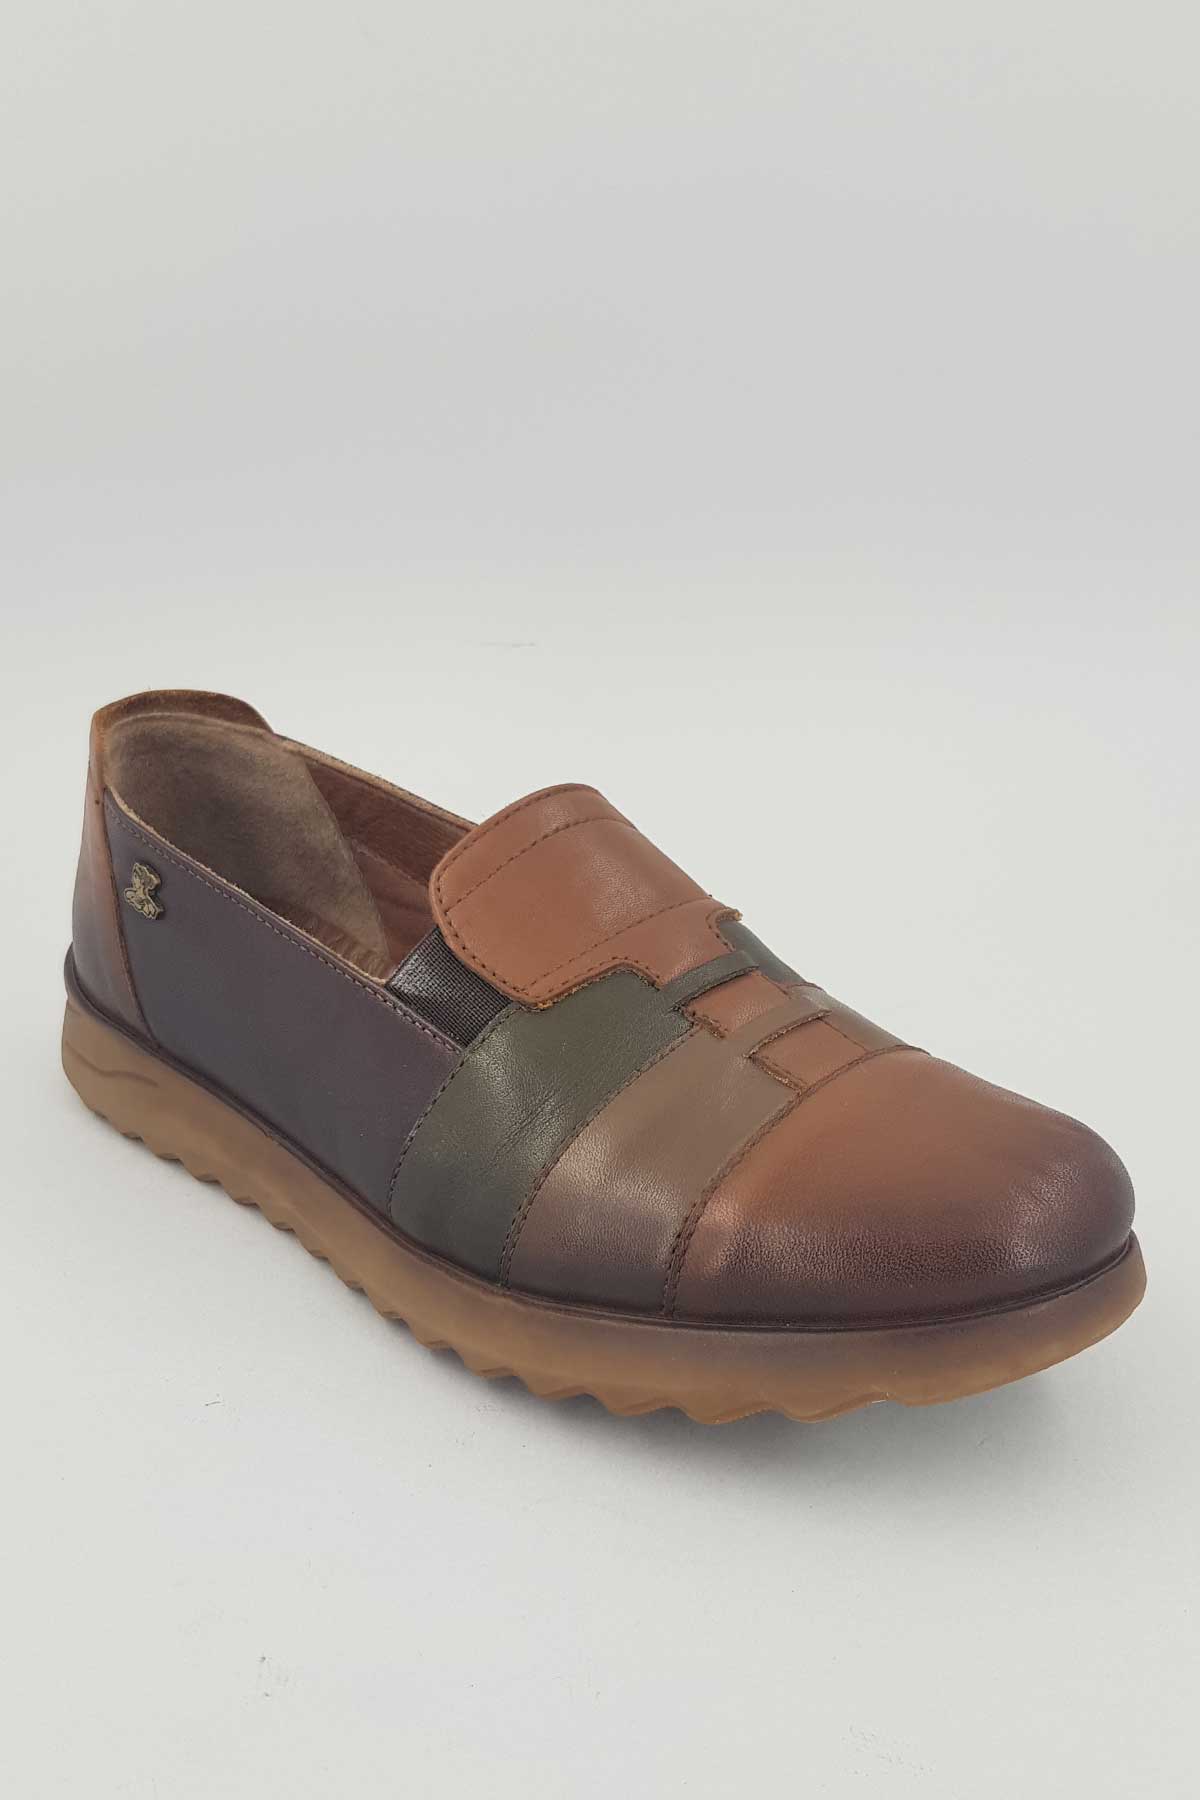 Kadın Comfort Deri Ayakkabı Taba 1813680K - Thumbnail